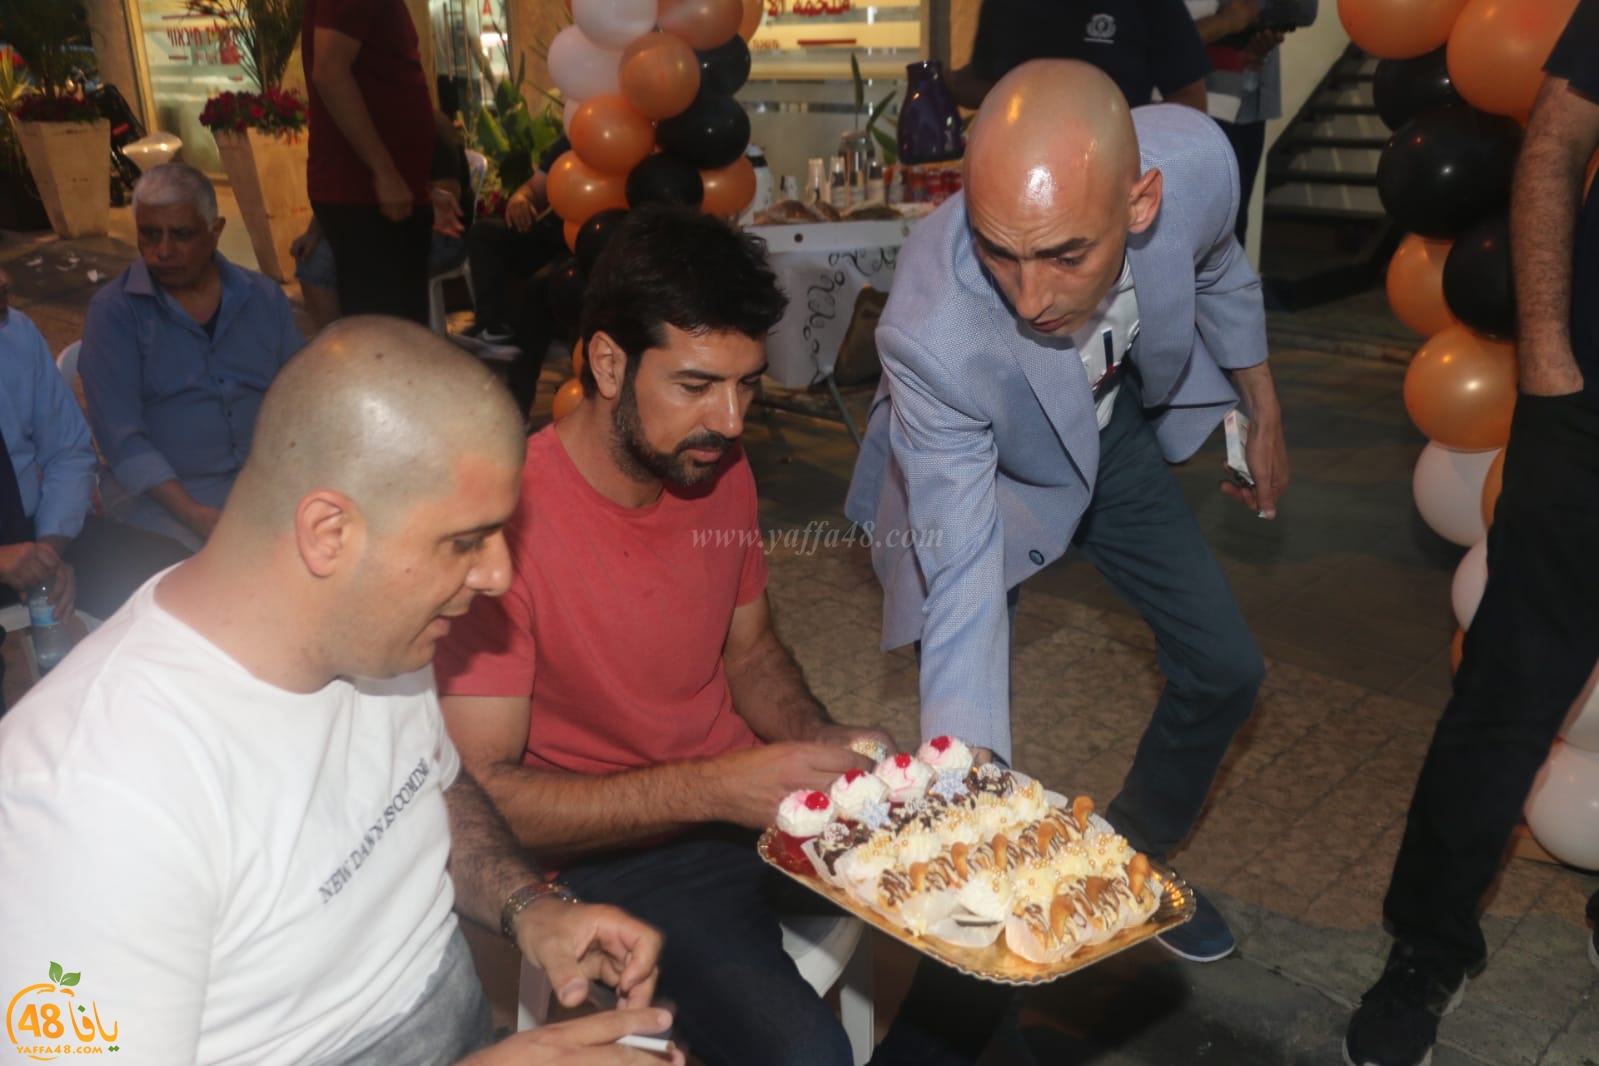  بالصور: افتتاح مكتب jaffa state للعقارات والسياحة في مدينة يافا 